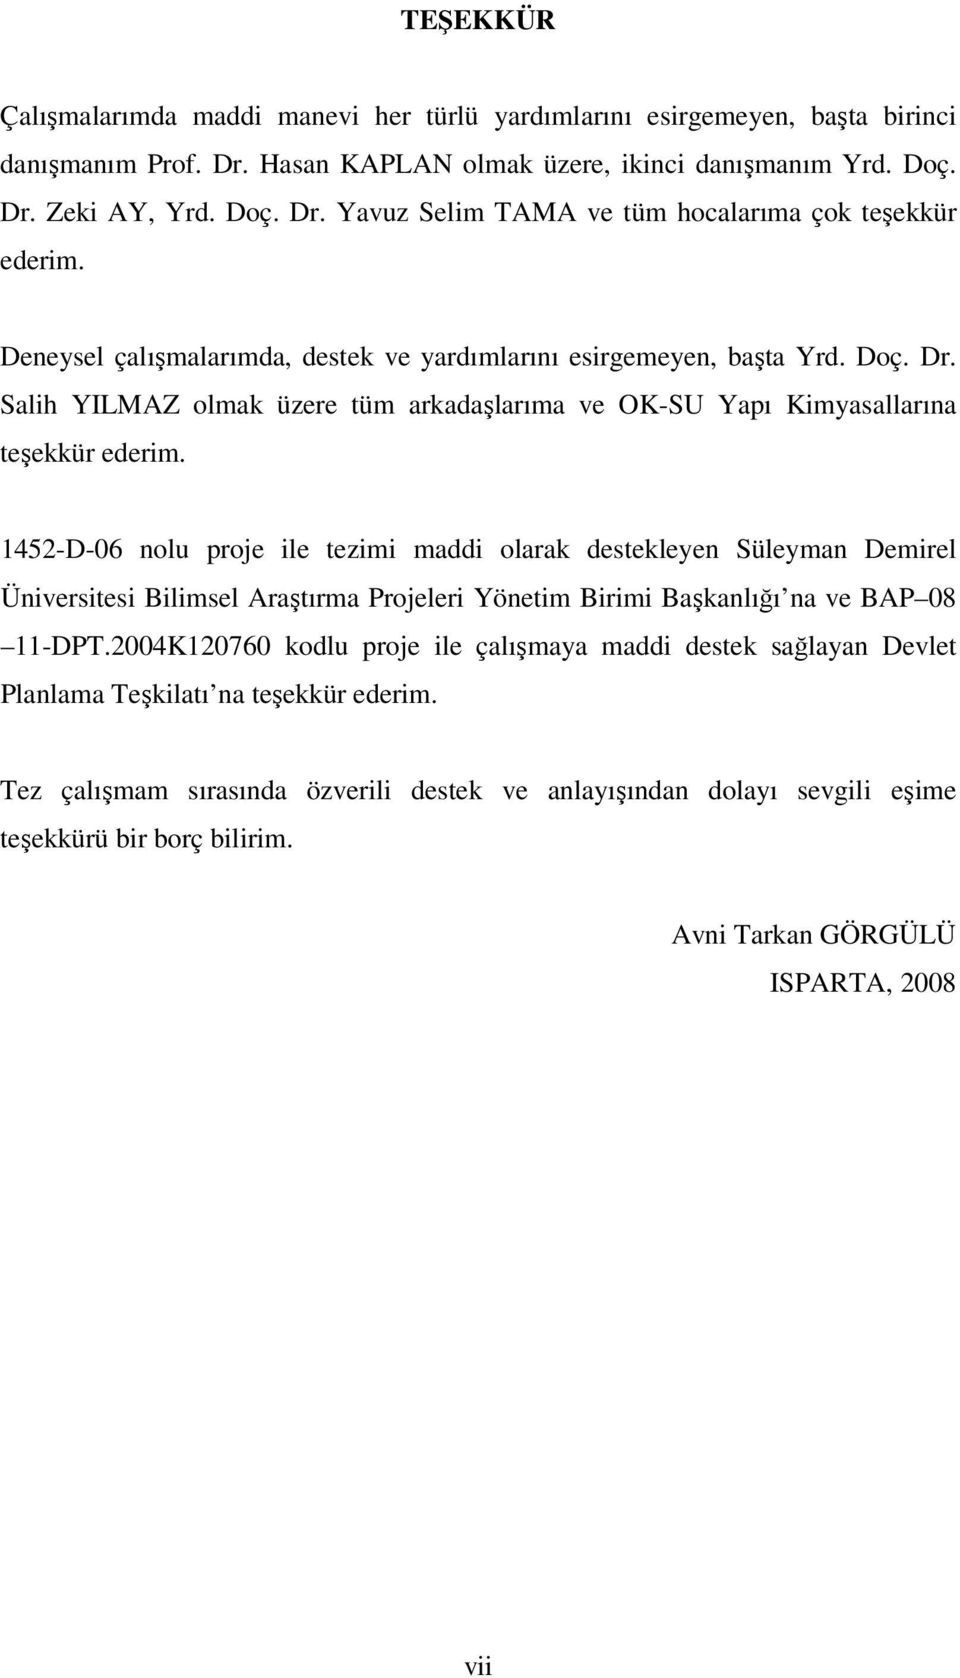 1452-D-06 nolu proje ile tezimi maddi olarak destekleyen Süleyman Demirel Üniversitesi Bilimsel Araştırma Projeleri Yönetim Birimi Başkanlığı na ve BAP 08 11-DPT.